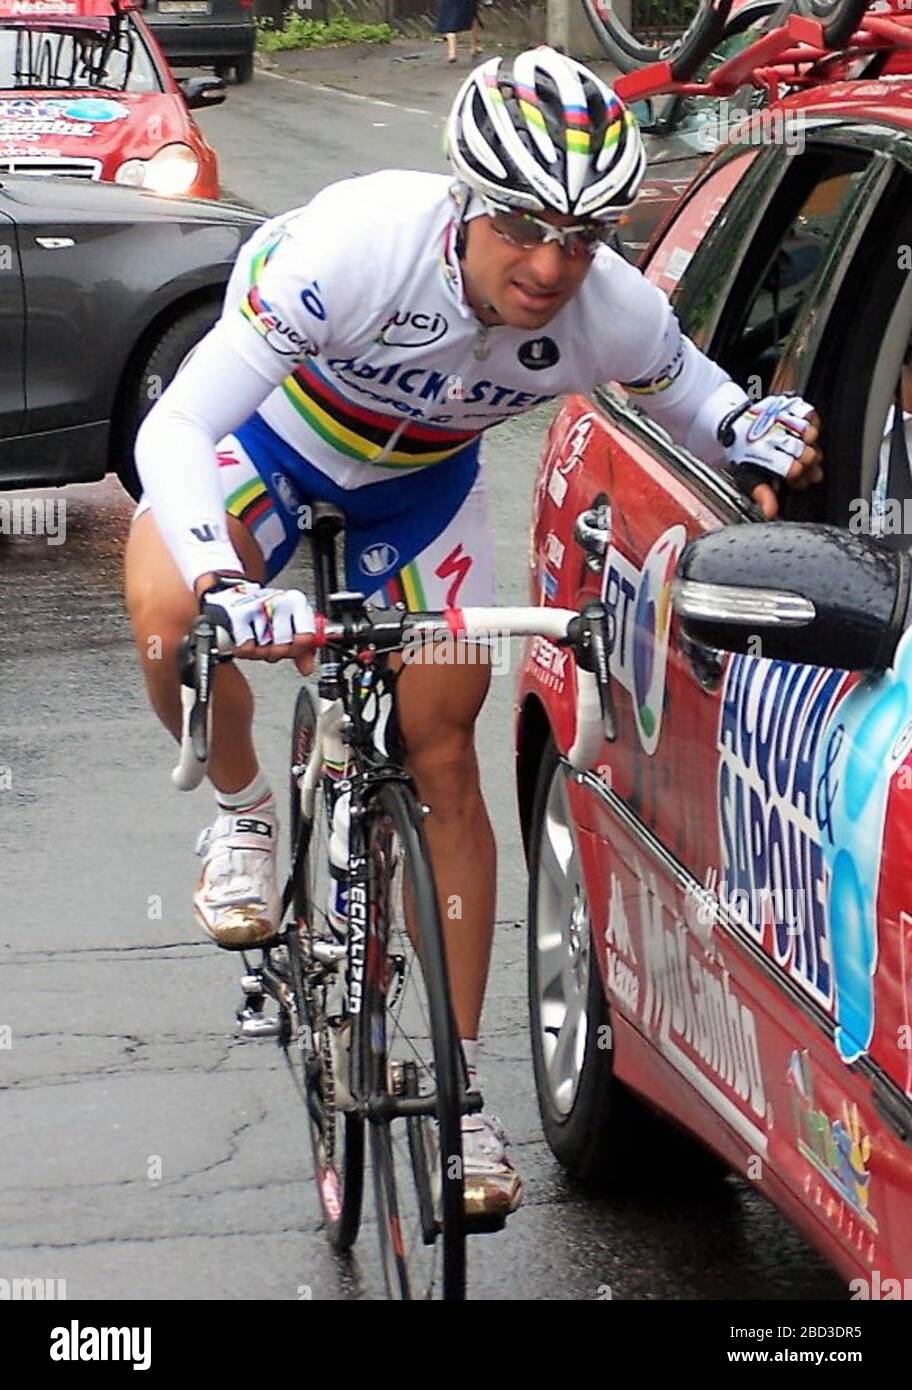 Paolo Bettini di Quickstep - Innergetic durante il Tour D'italie,Canté - Bergamo 192 km il 26 maggio 2007 a Canté- Foto Laurent Lairys / DPPI Foto Stock